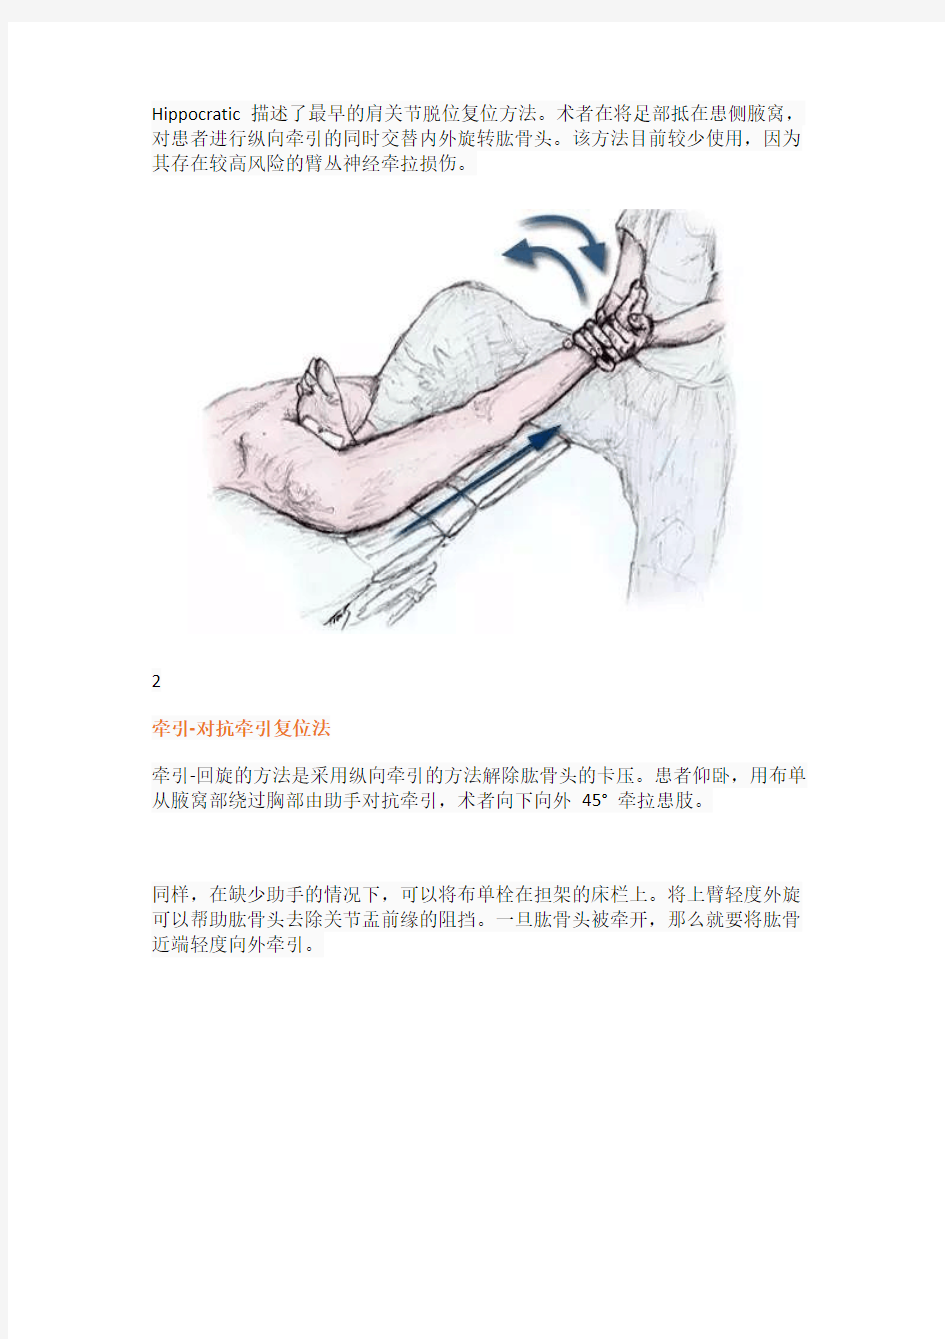 (仅供参考)肩关节前脱位的11种复位方法